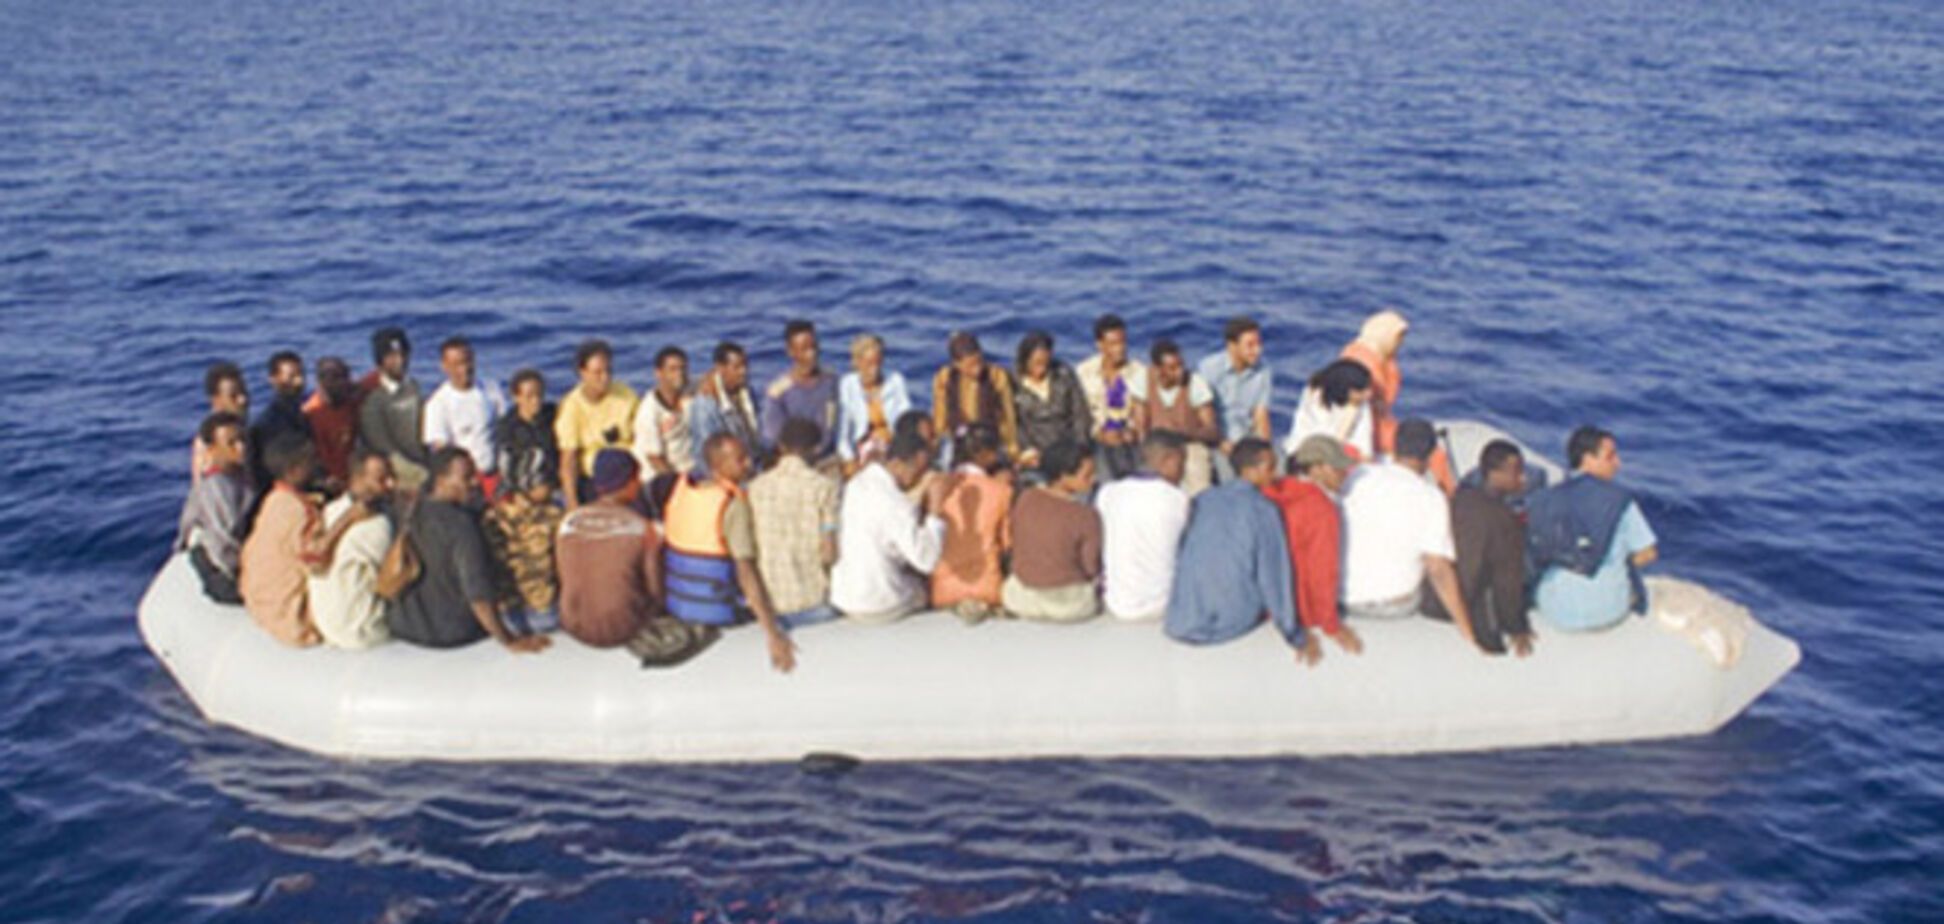  У берегов Европы в Средиземном море погибли около 300 беженцев из Африки 